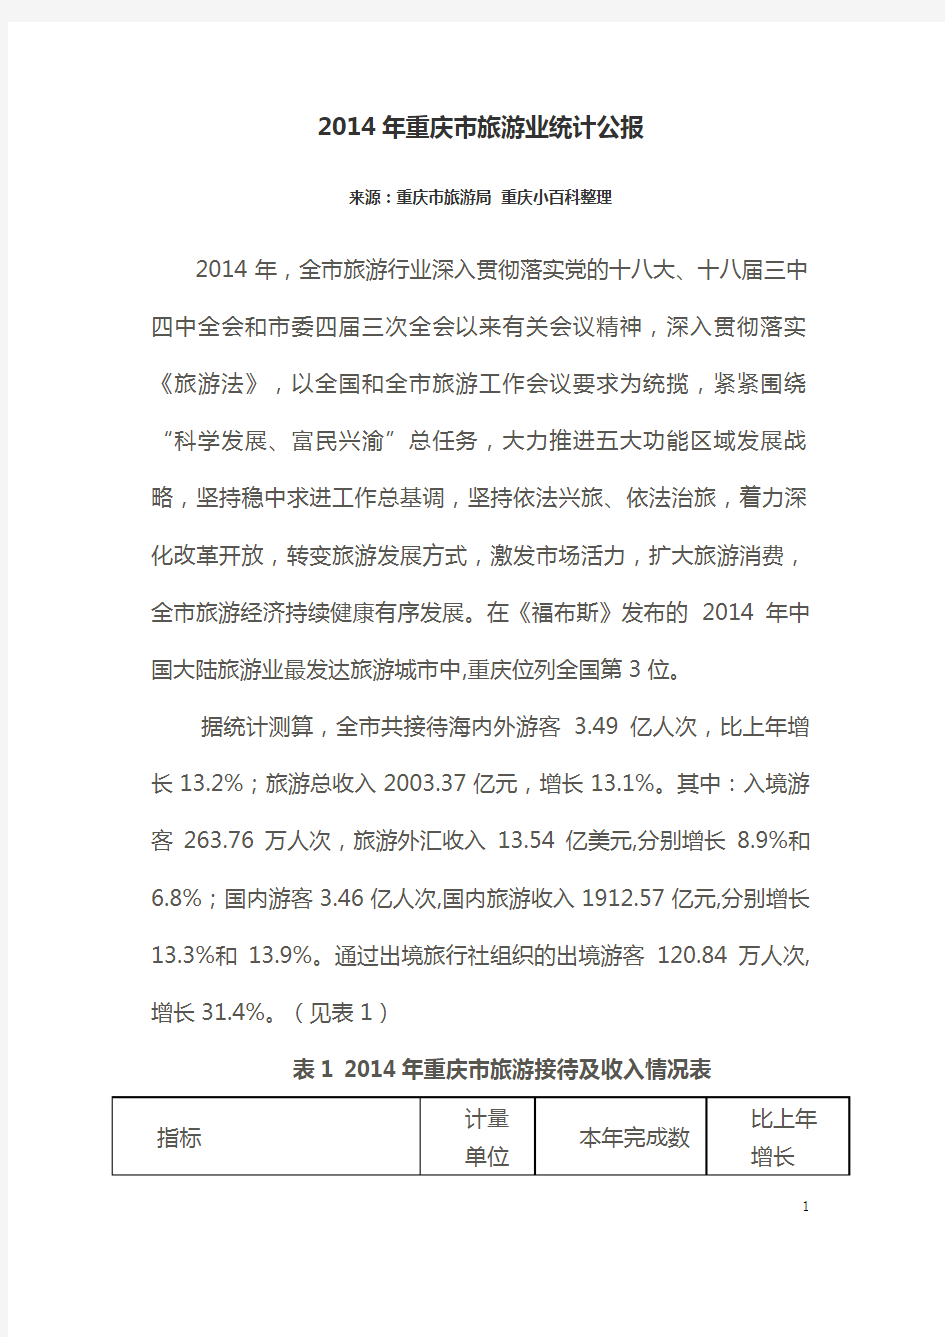 2014年重庆市旅游业统计公报